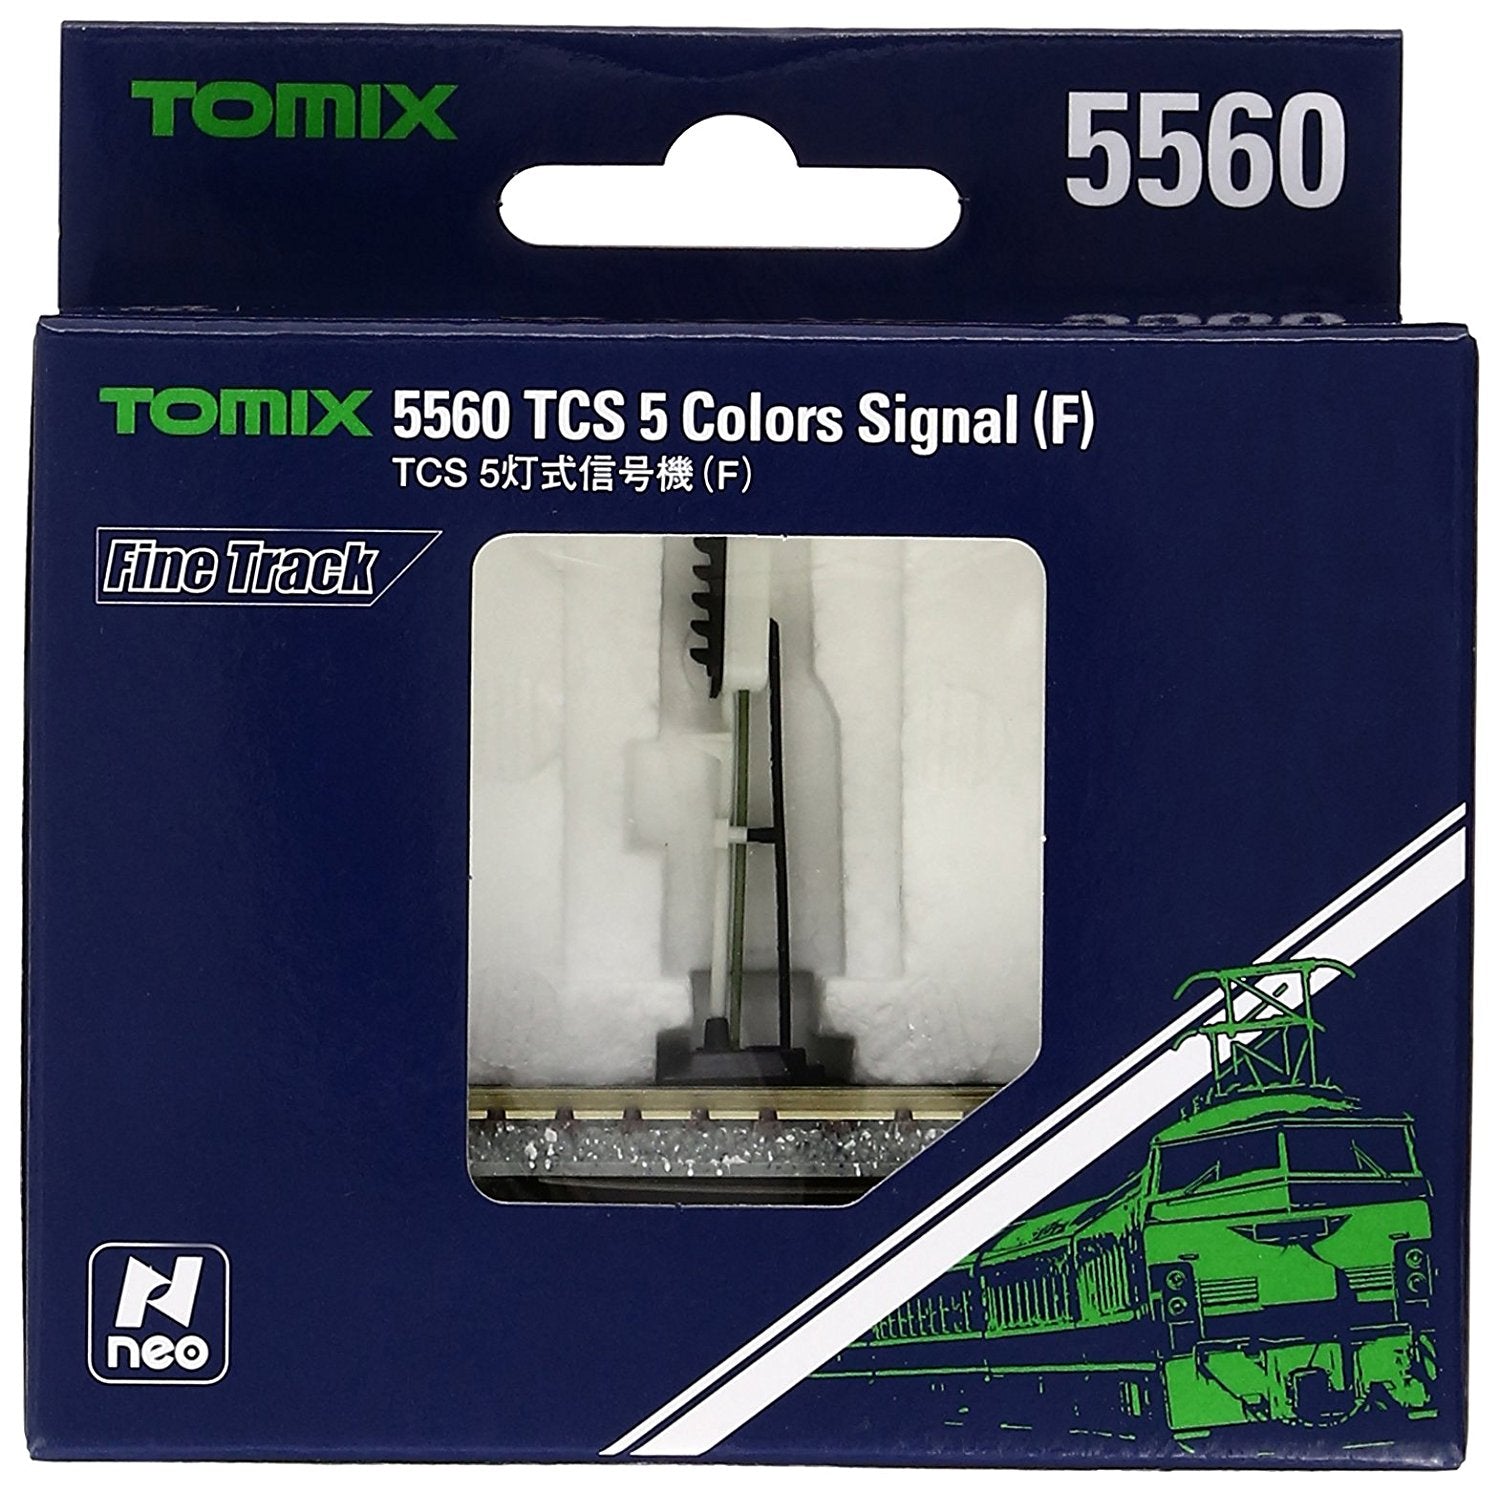 Fine Track TCS 5 Colors Signal (F)